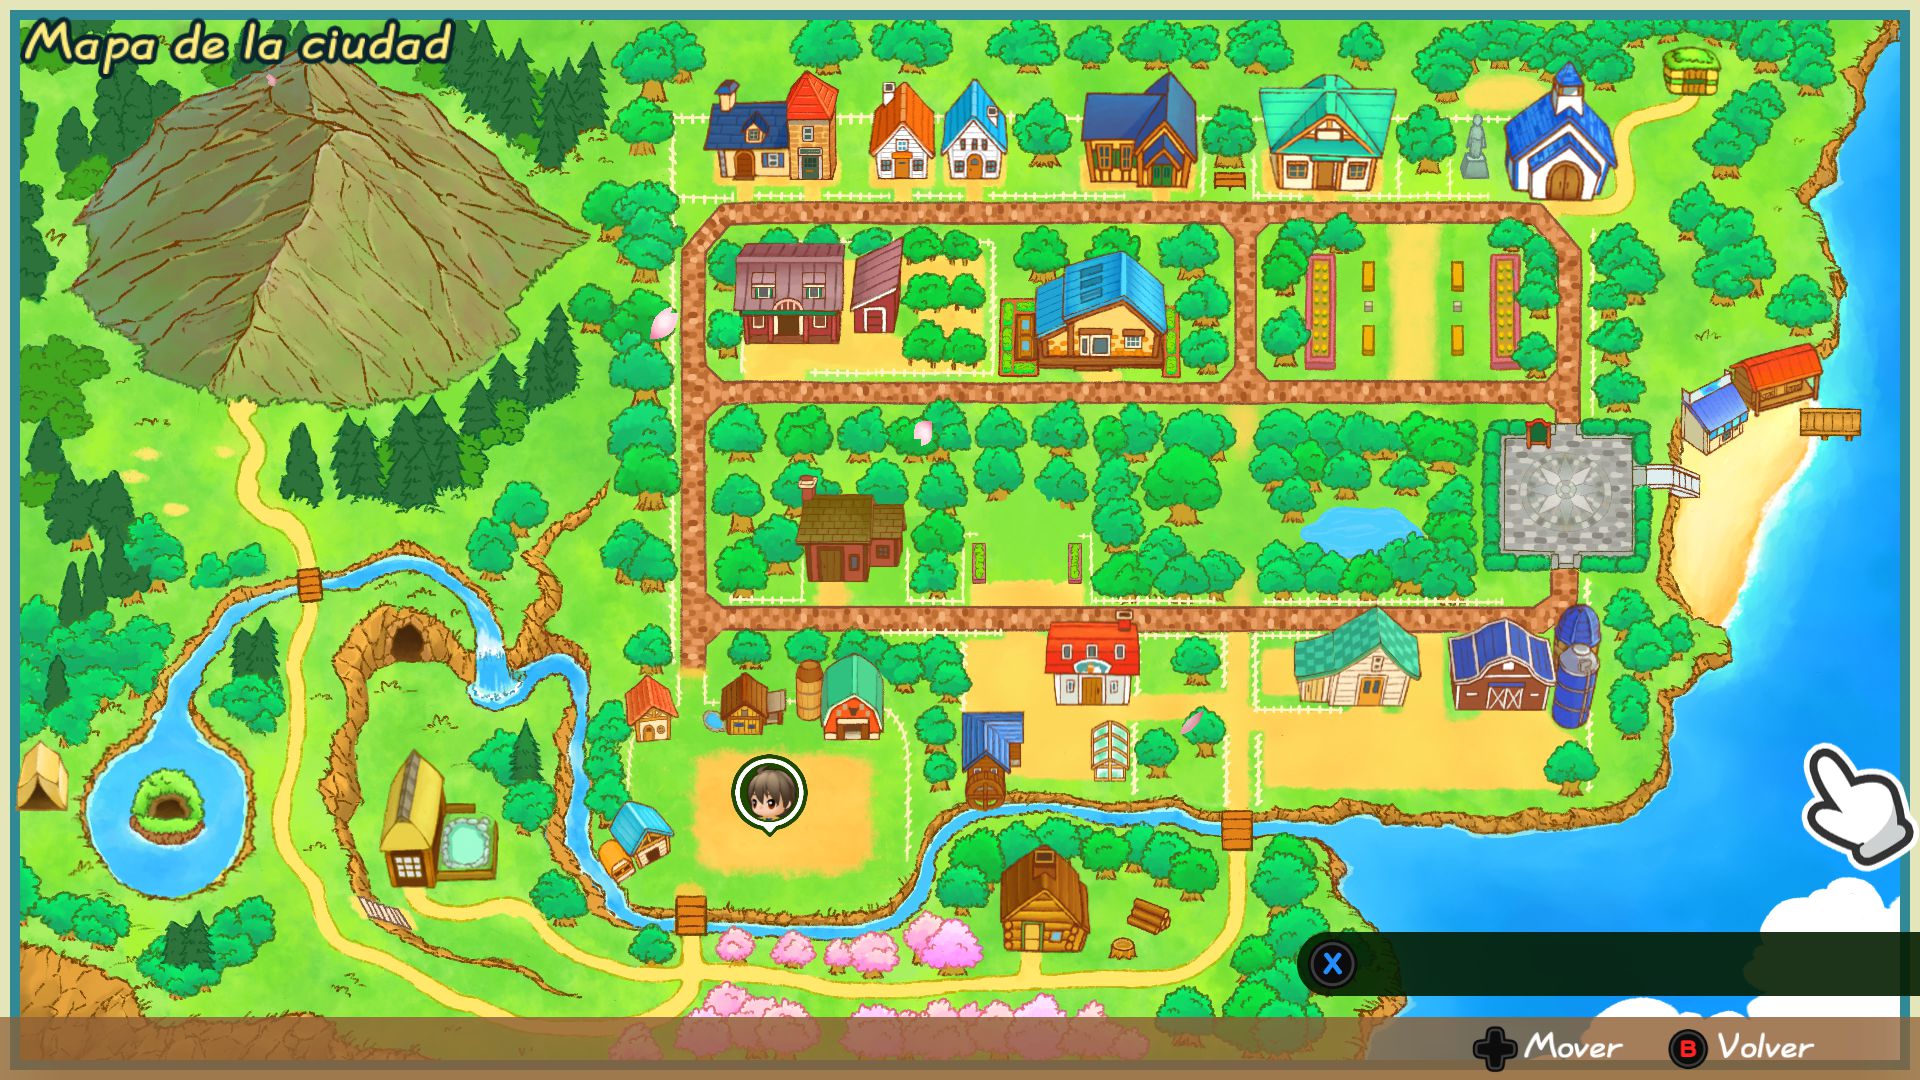 Análisis de Story of Seasons: Friends of Mineral Town - Analizamos Story of Seasons: Friends of Mineral Town, un remake que por fin llega a Xbox, siendo este un estupendo simulador de vida y gestión de la granja.